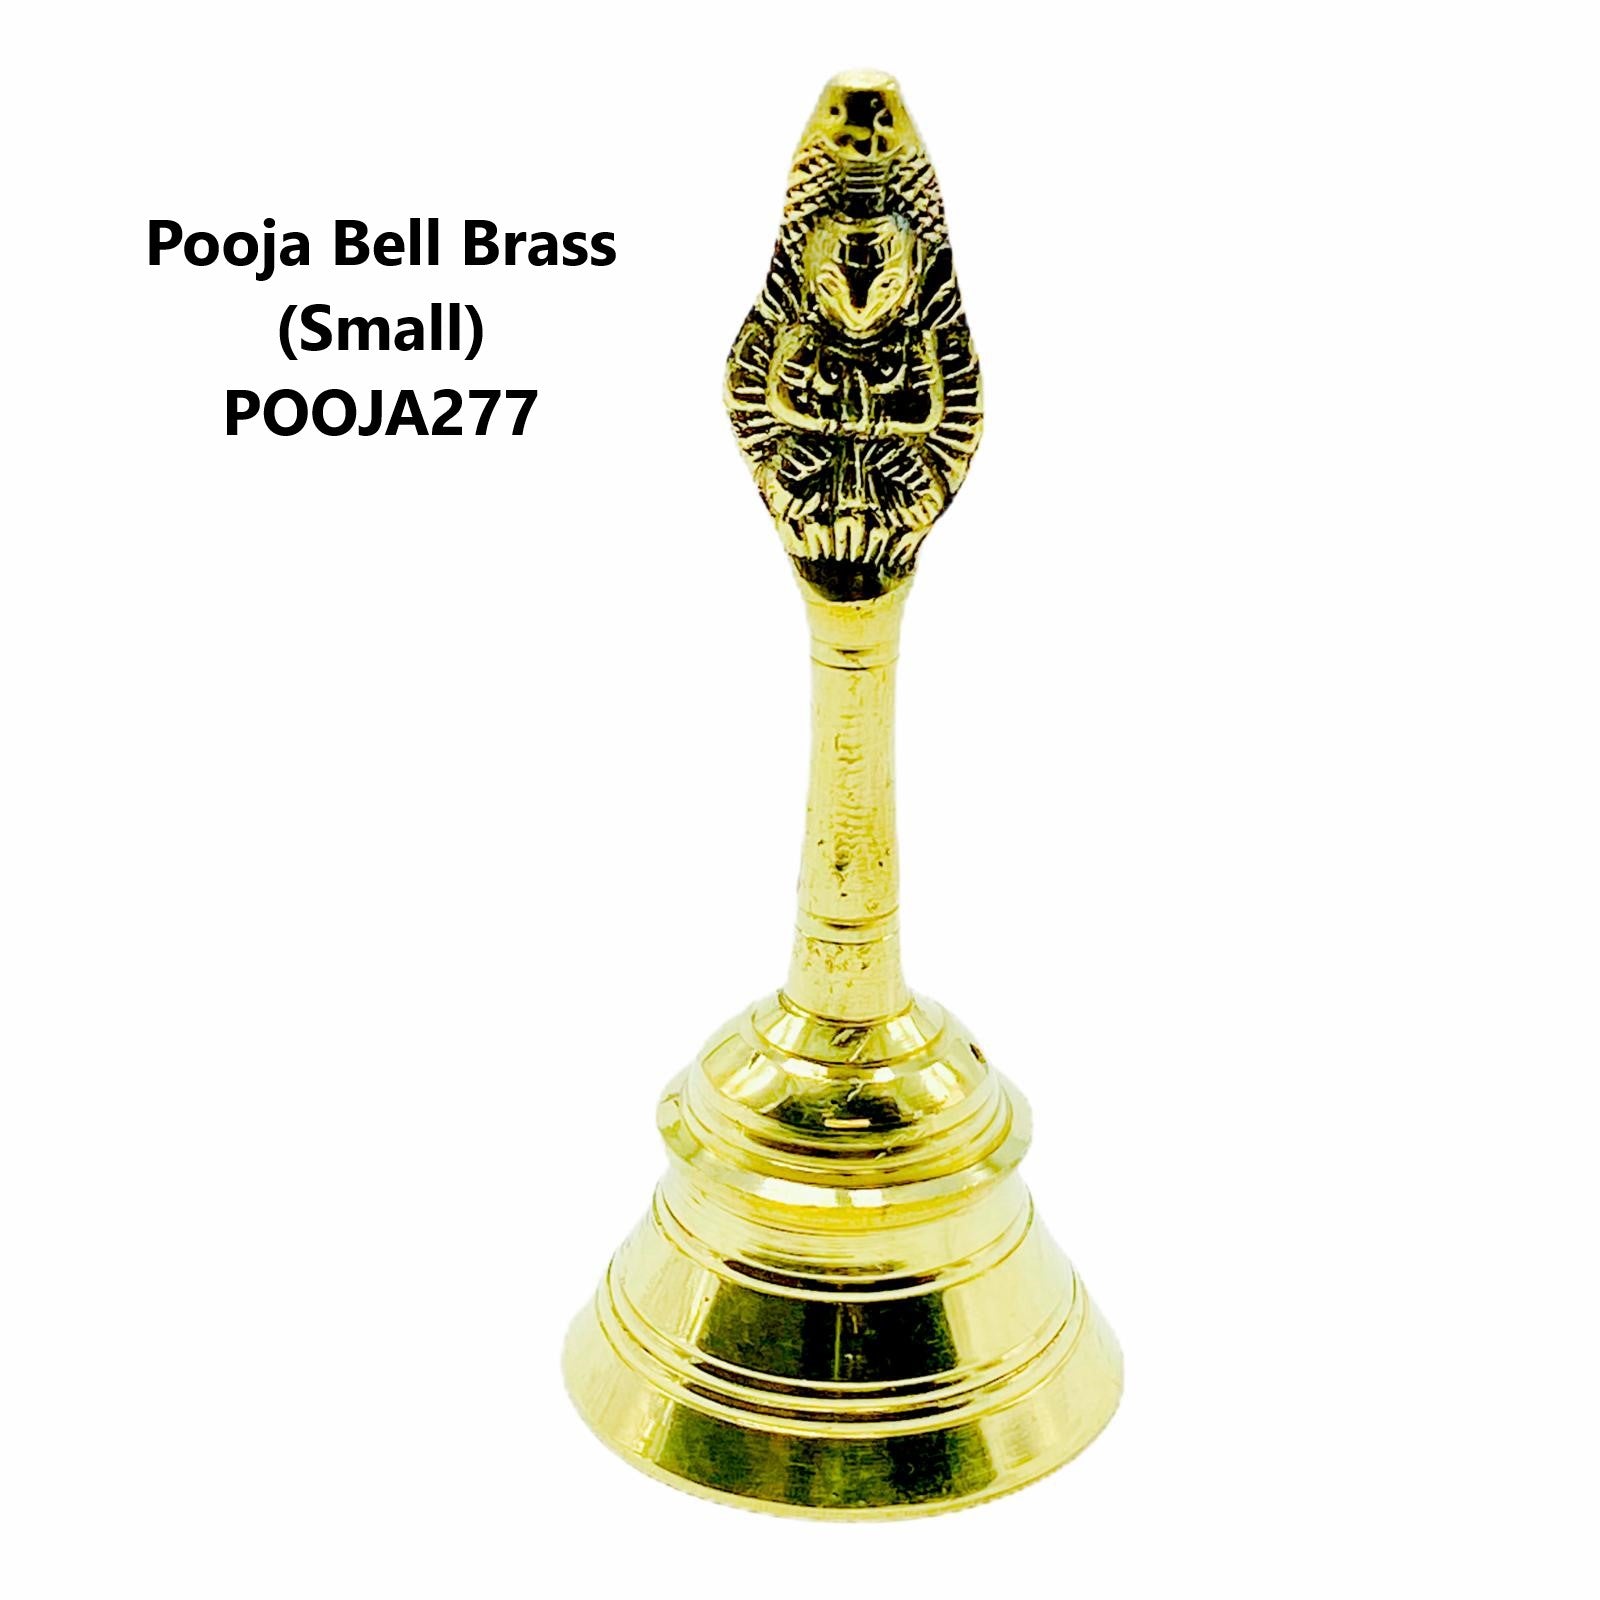 Pooja Bell Brass Small